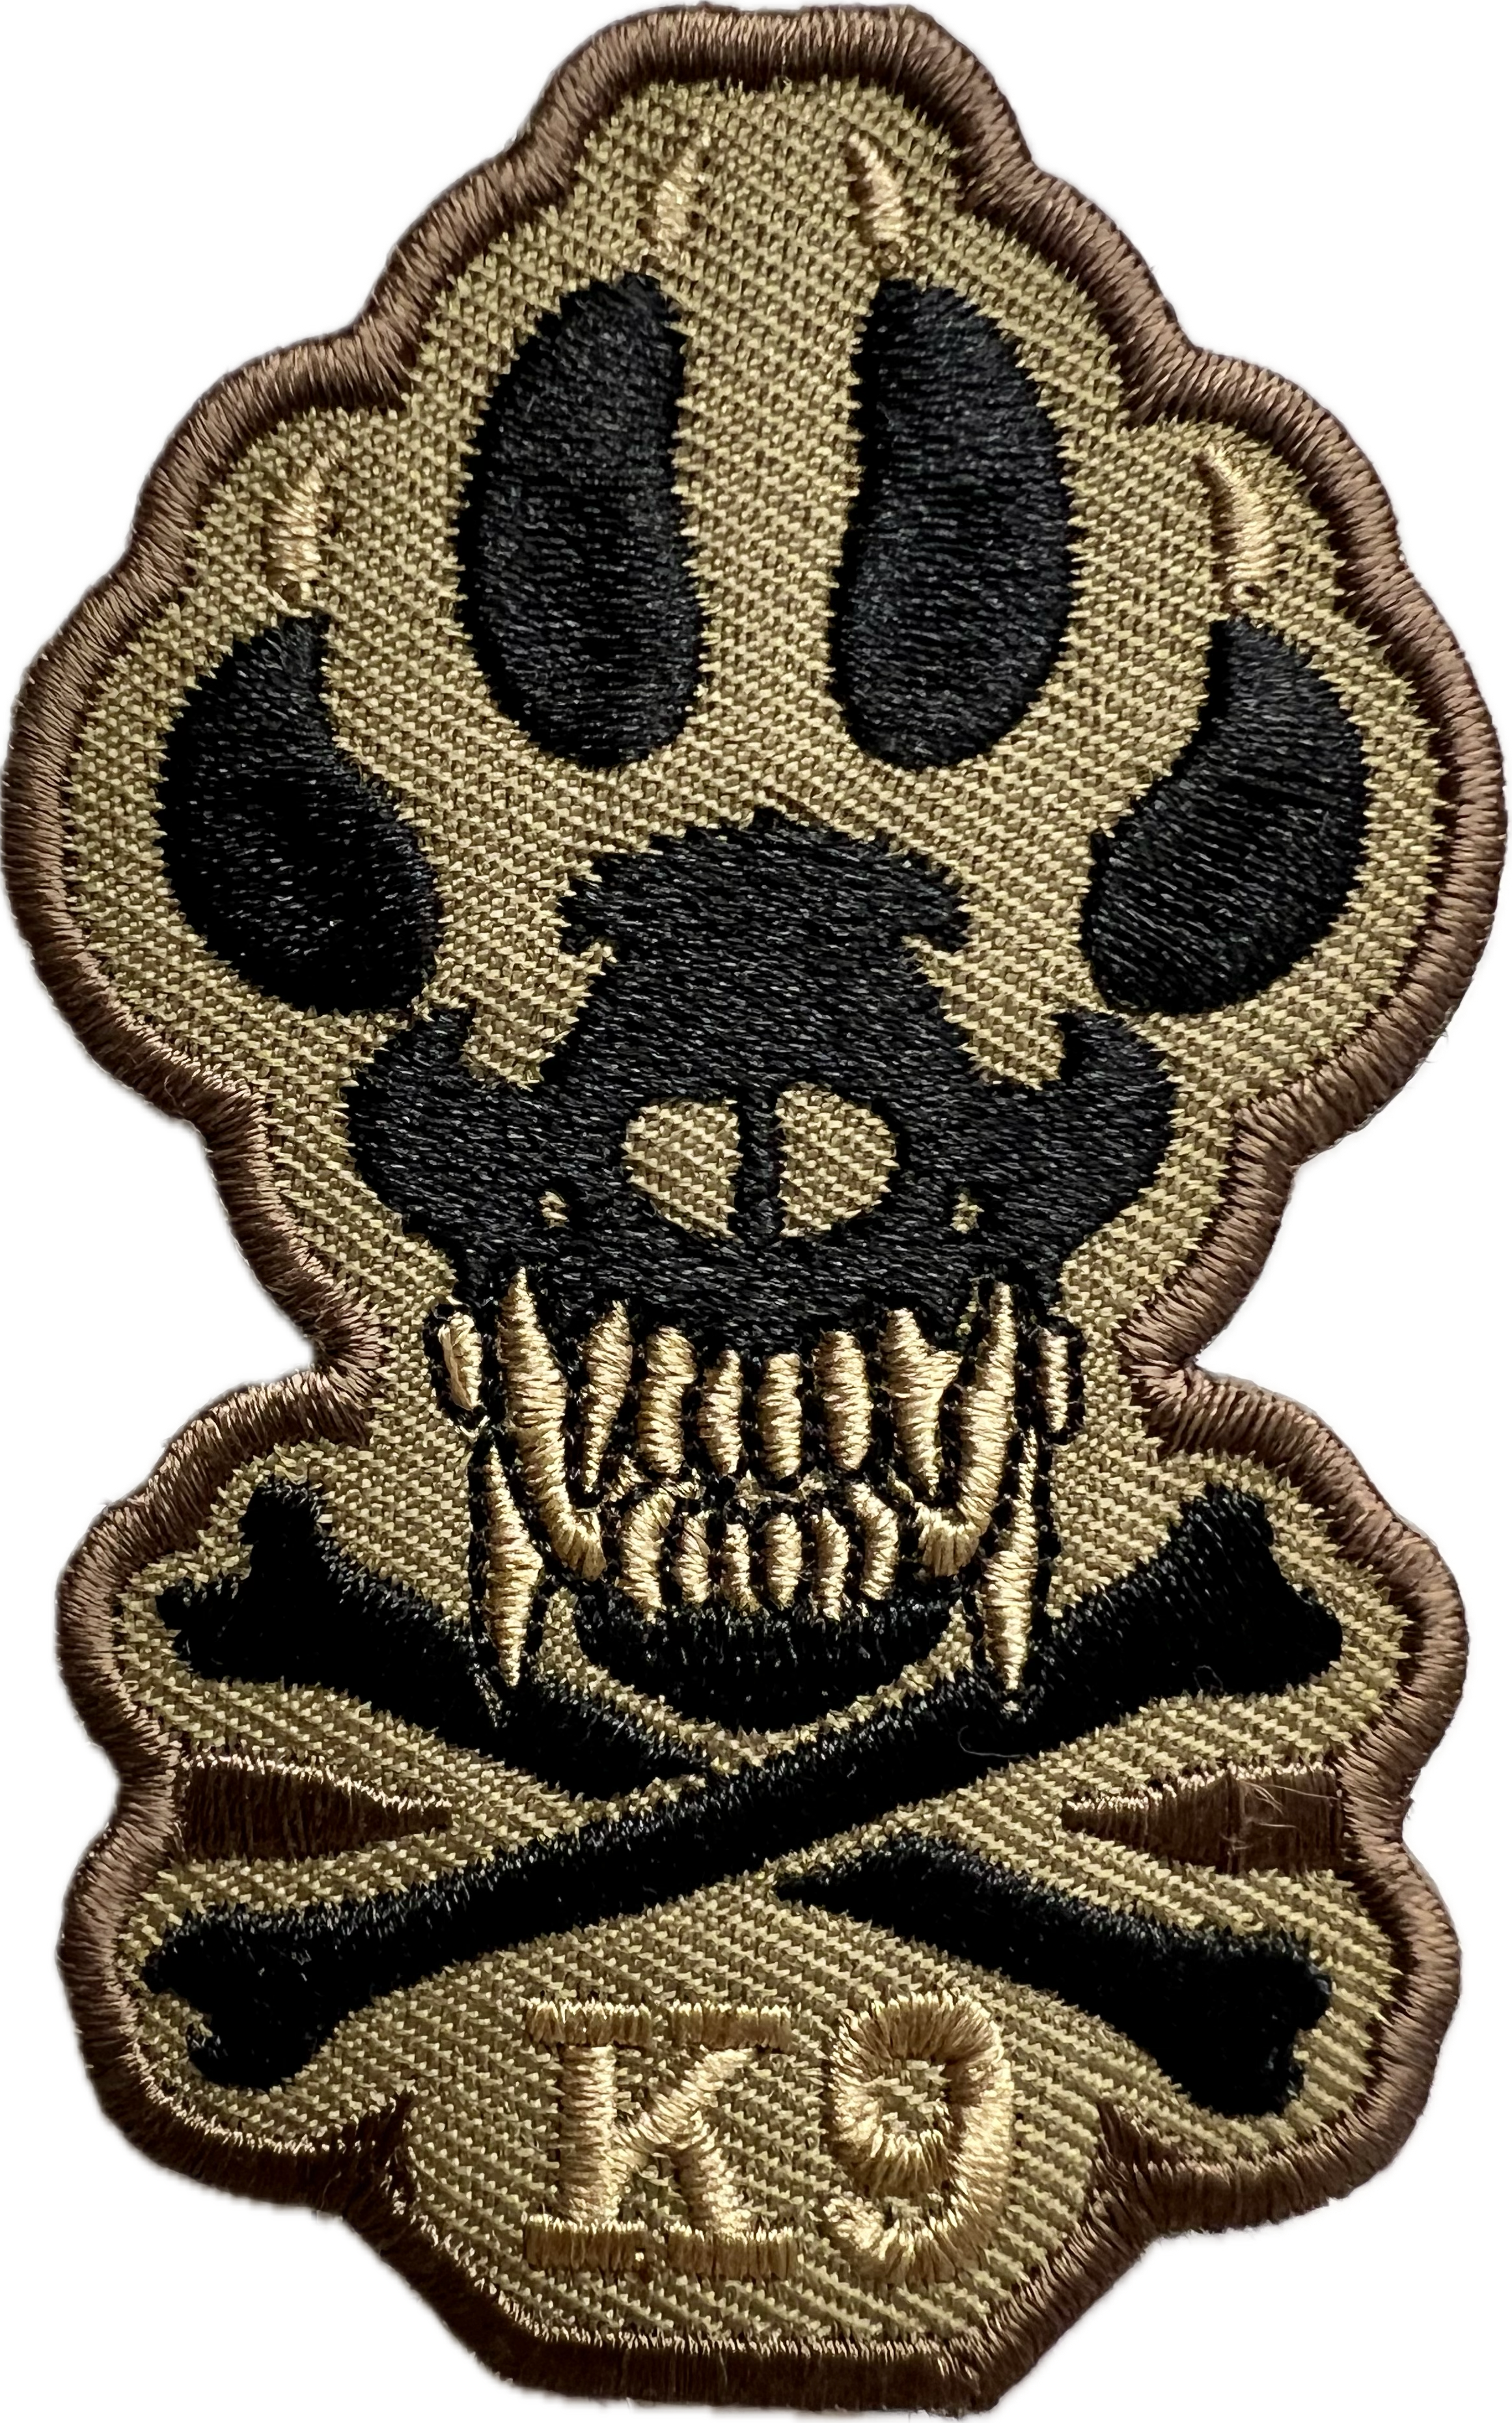 K-9 "Badge"